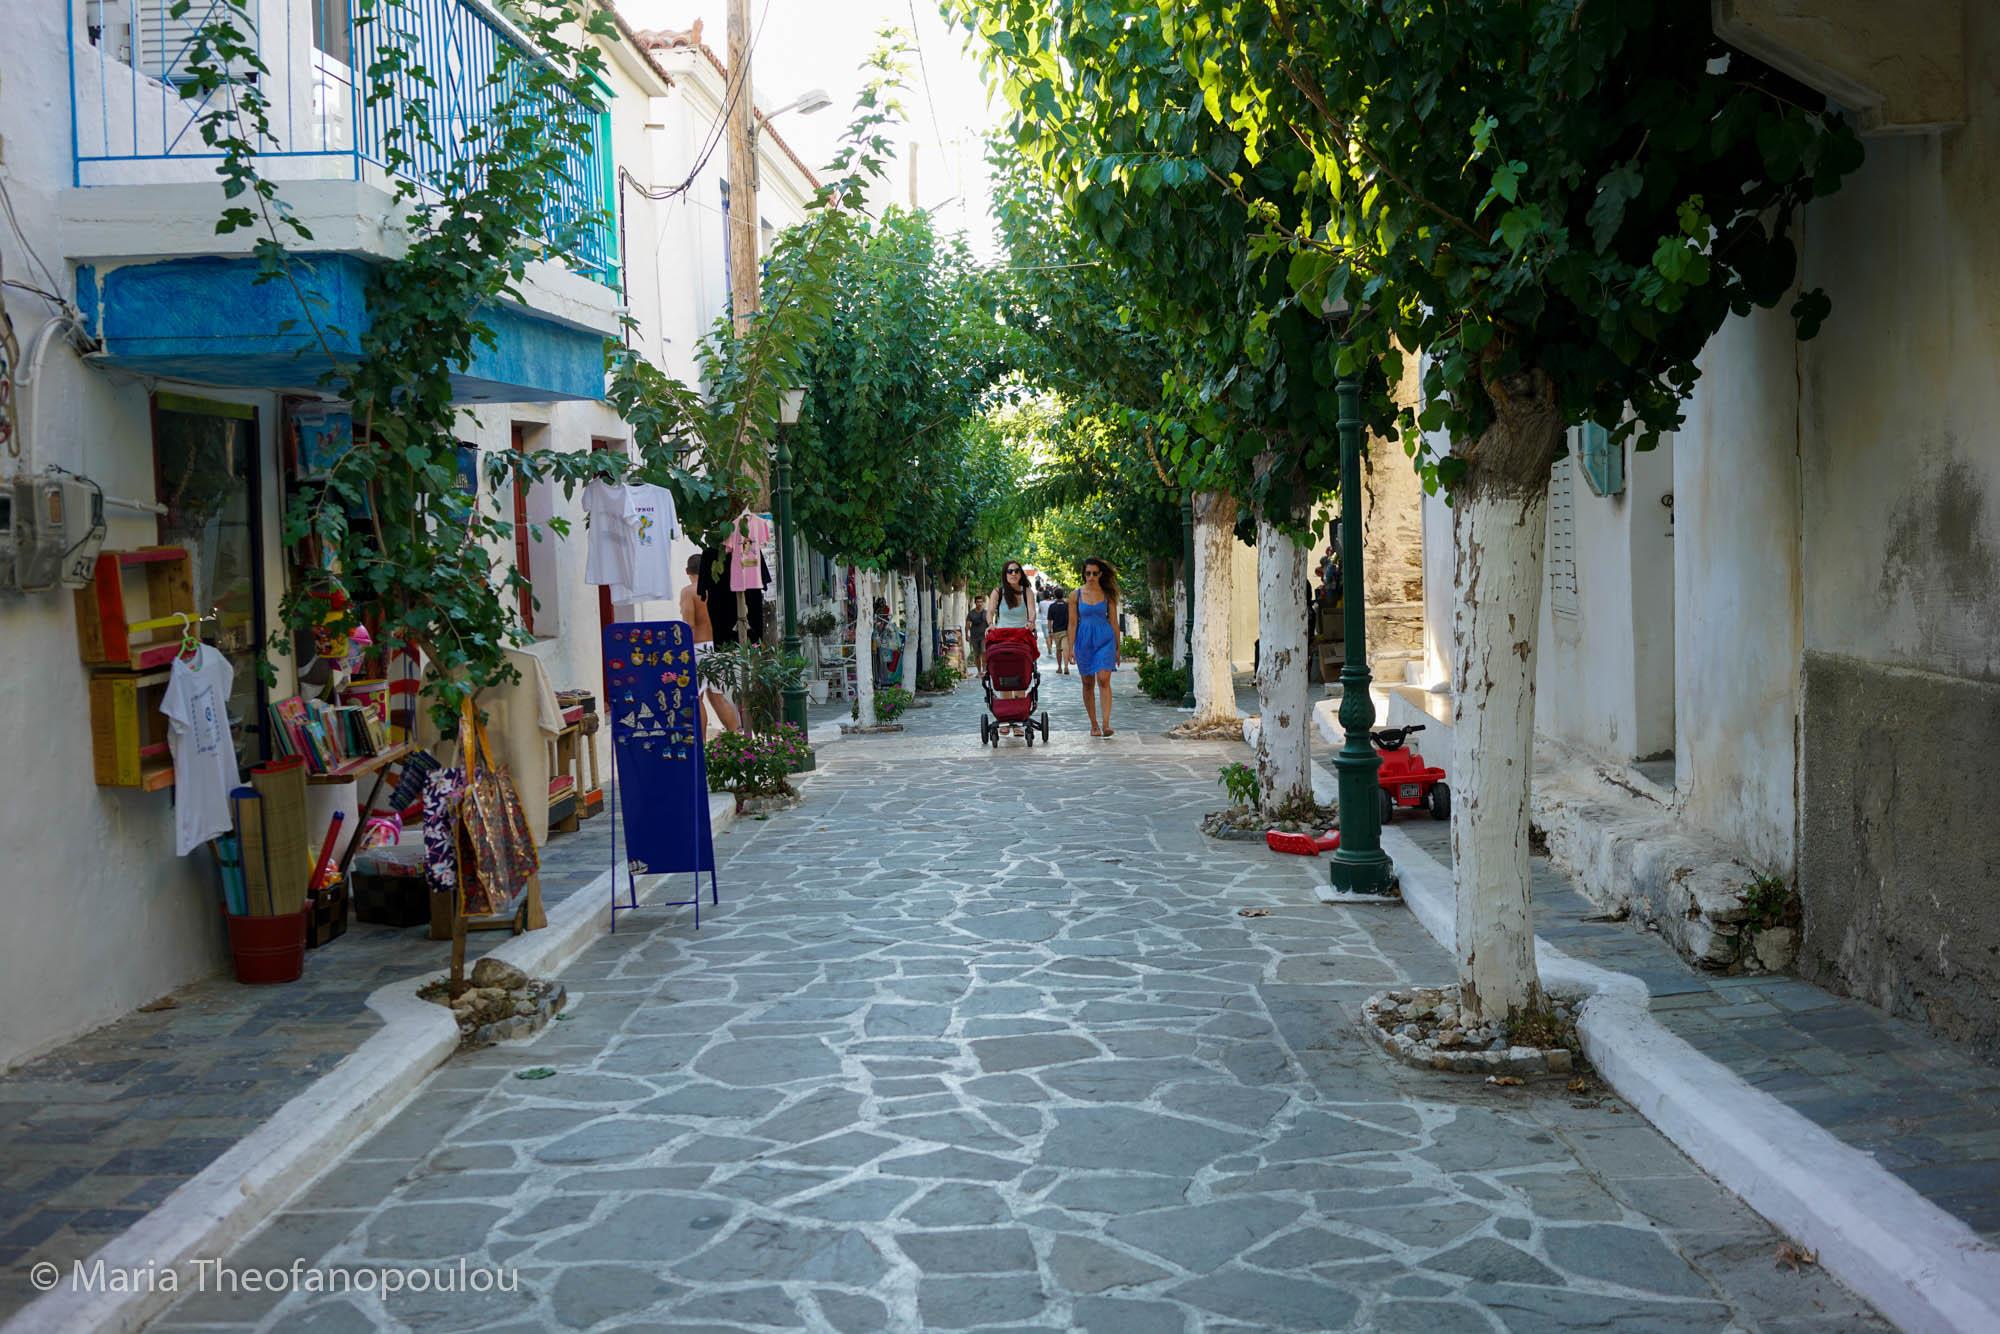 Alley at Fourni FOURNI (Port) NORTH AEGEAN